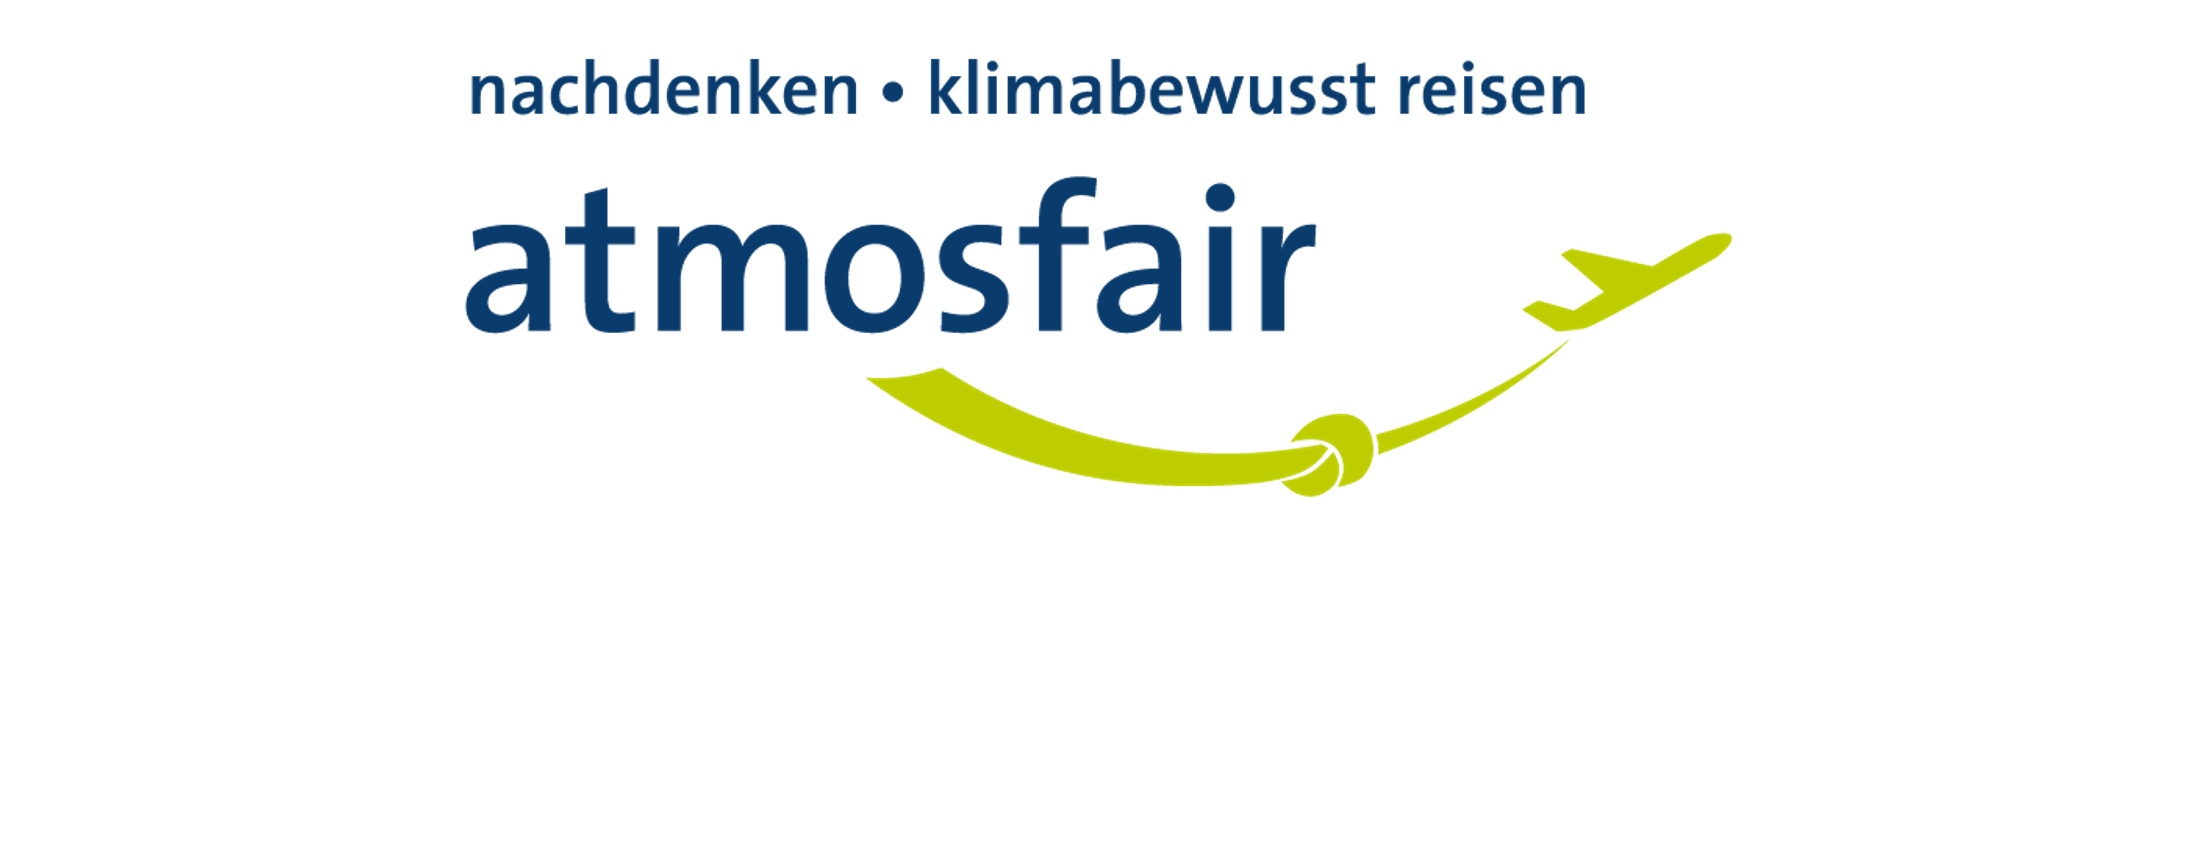 atmosfair Logo